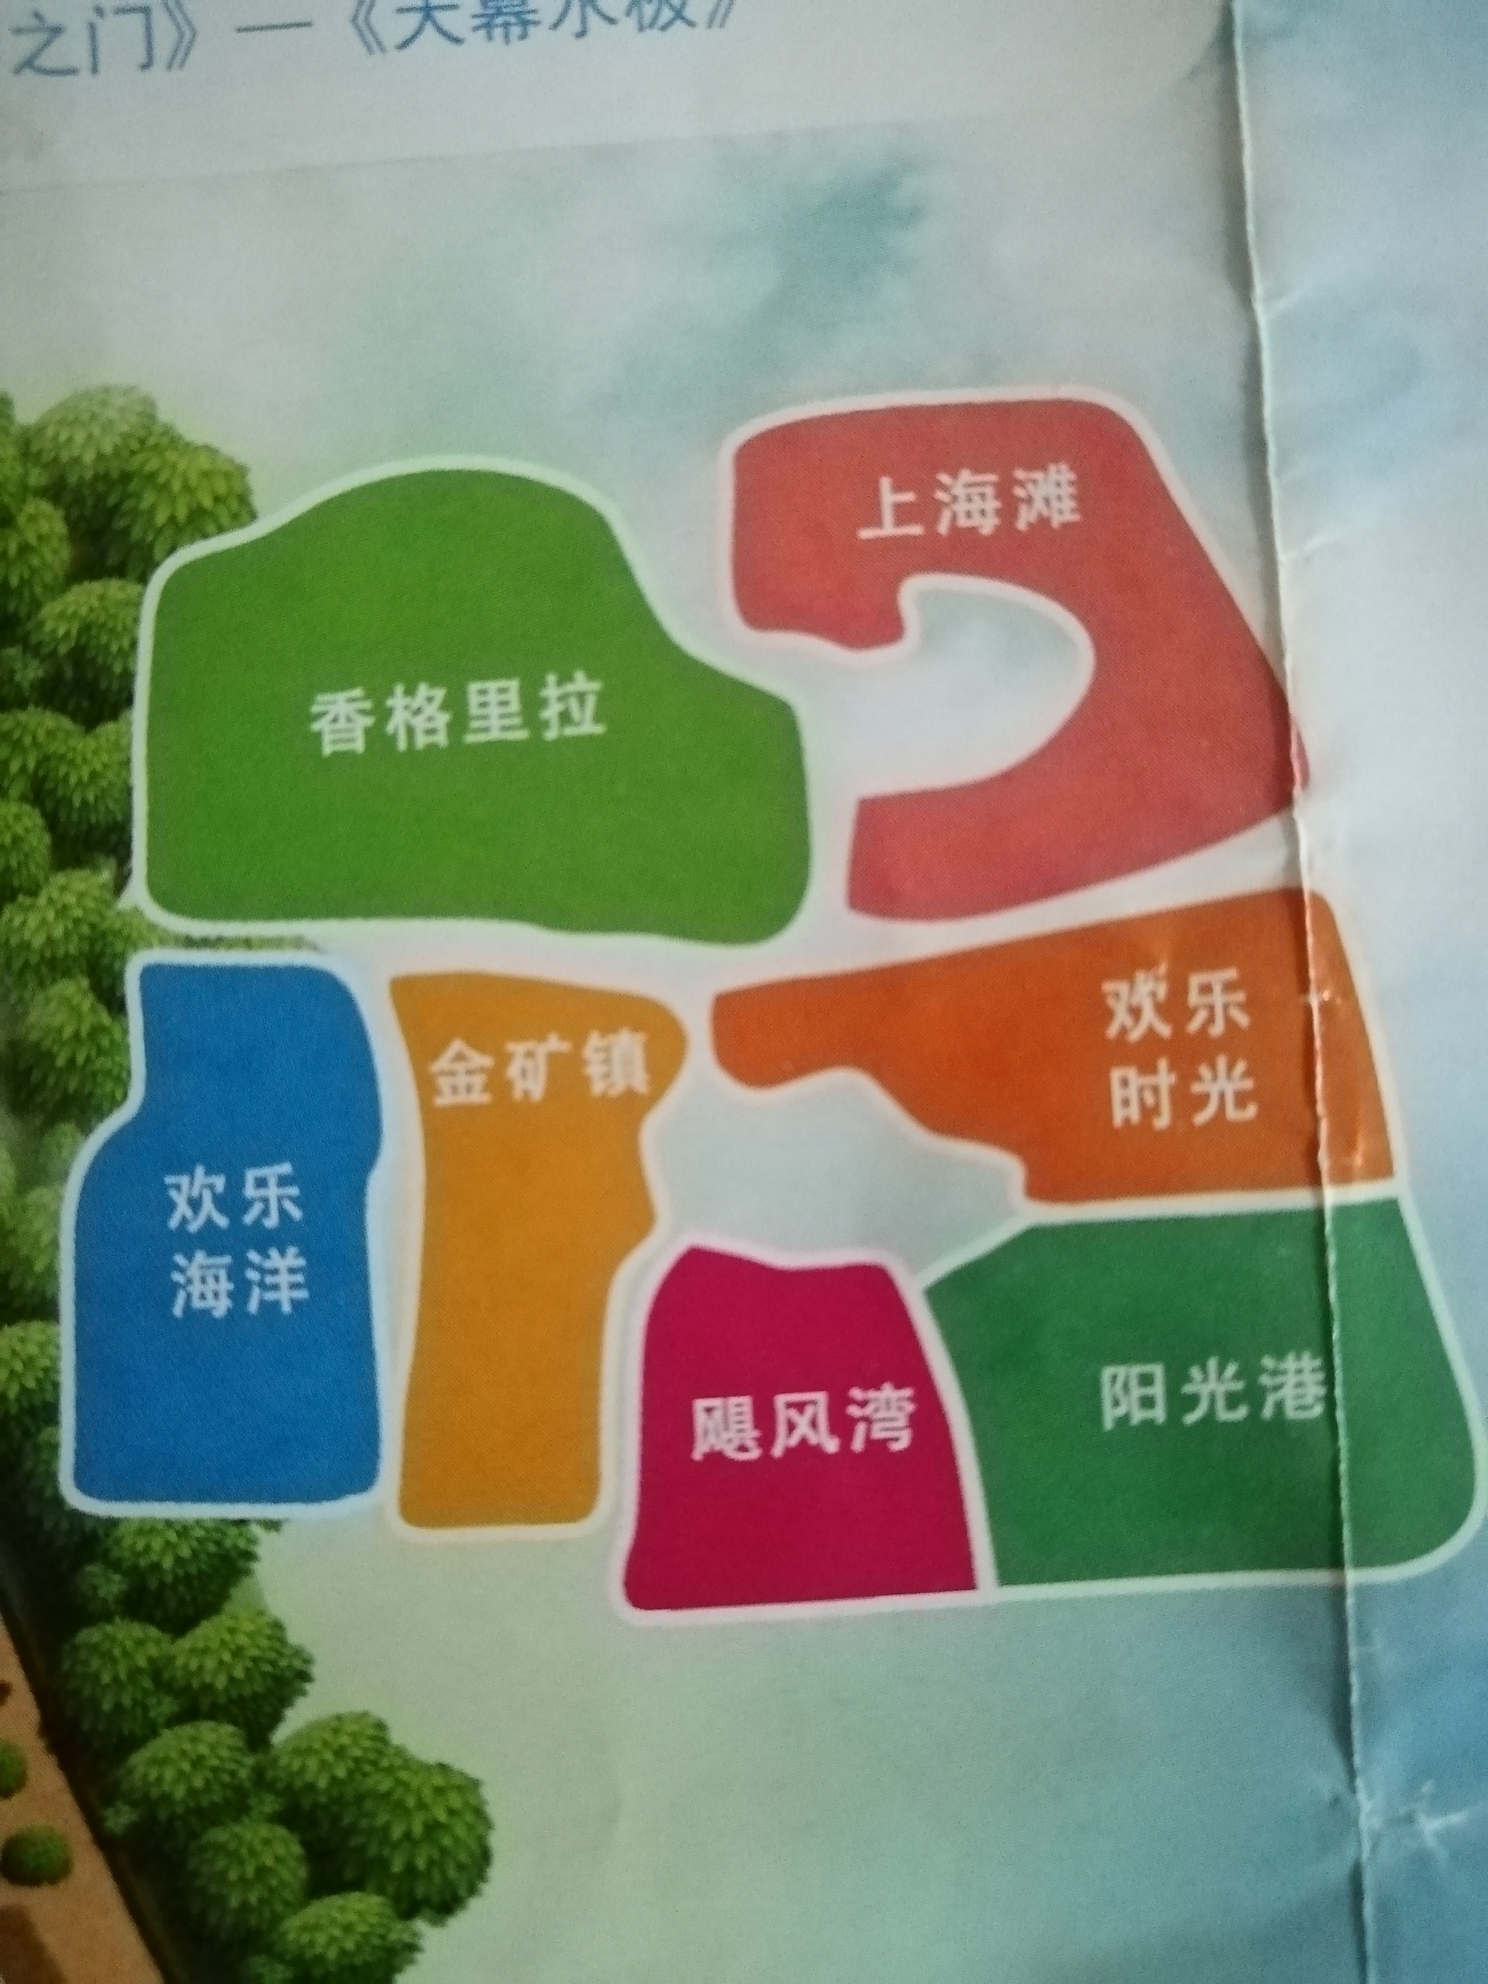 上海娱乐地图ylmap图片